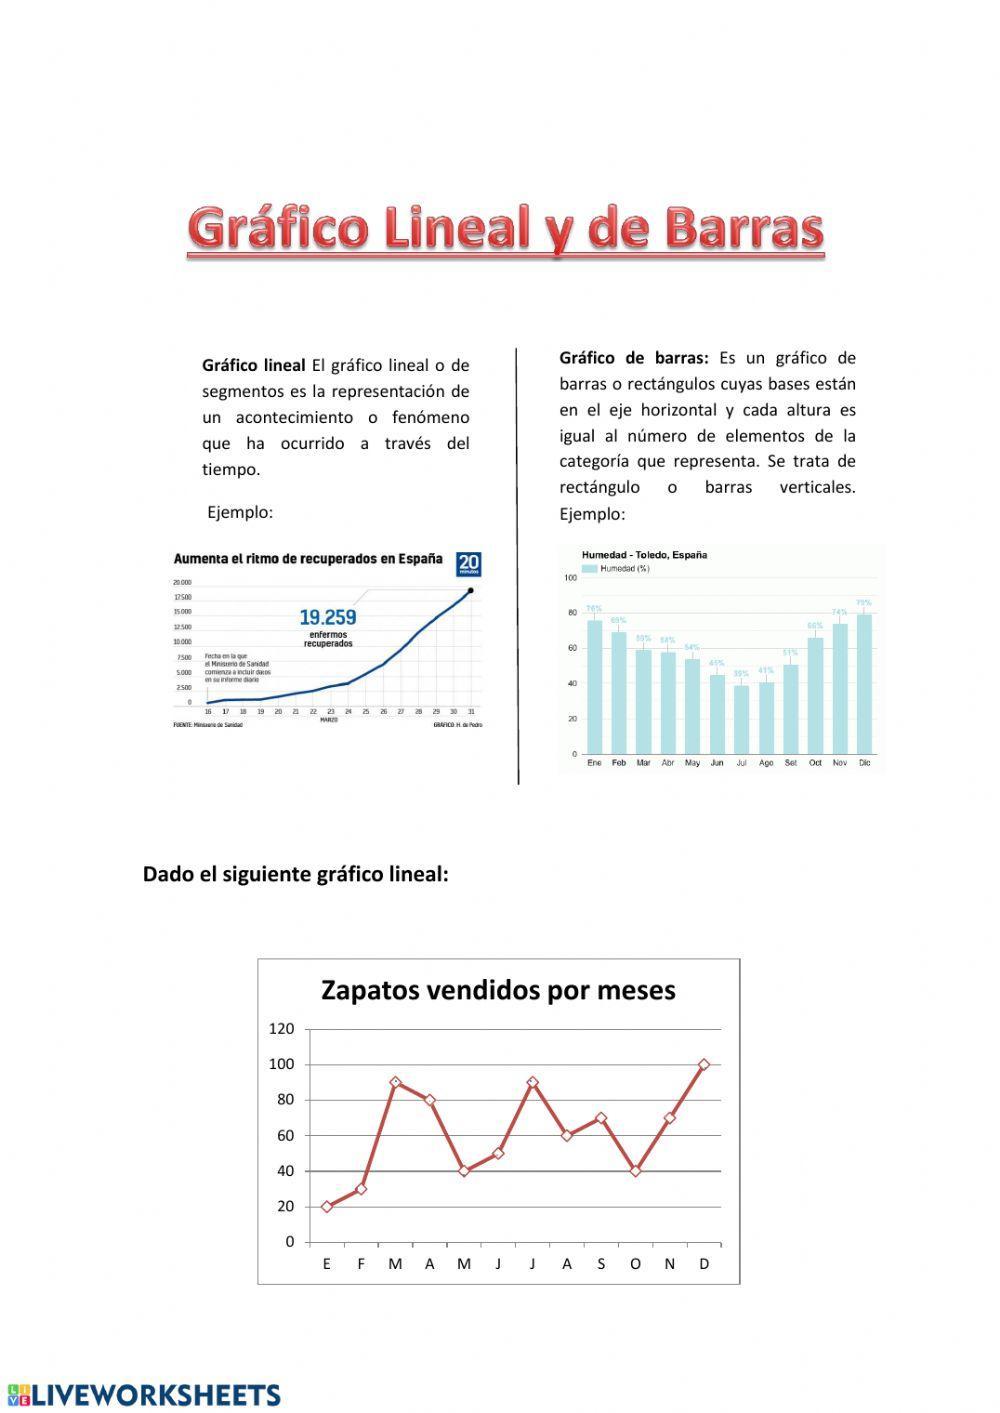 Gráfico lineal y de barras